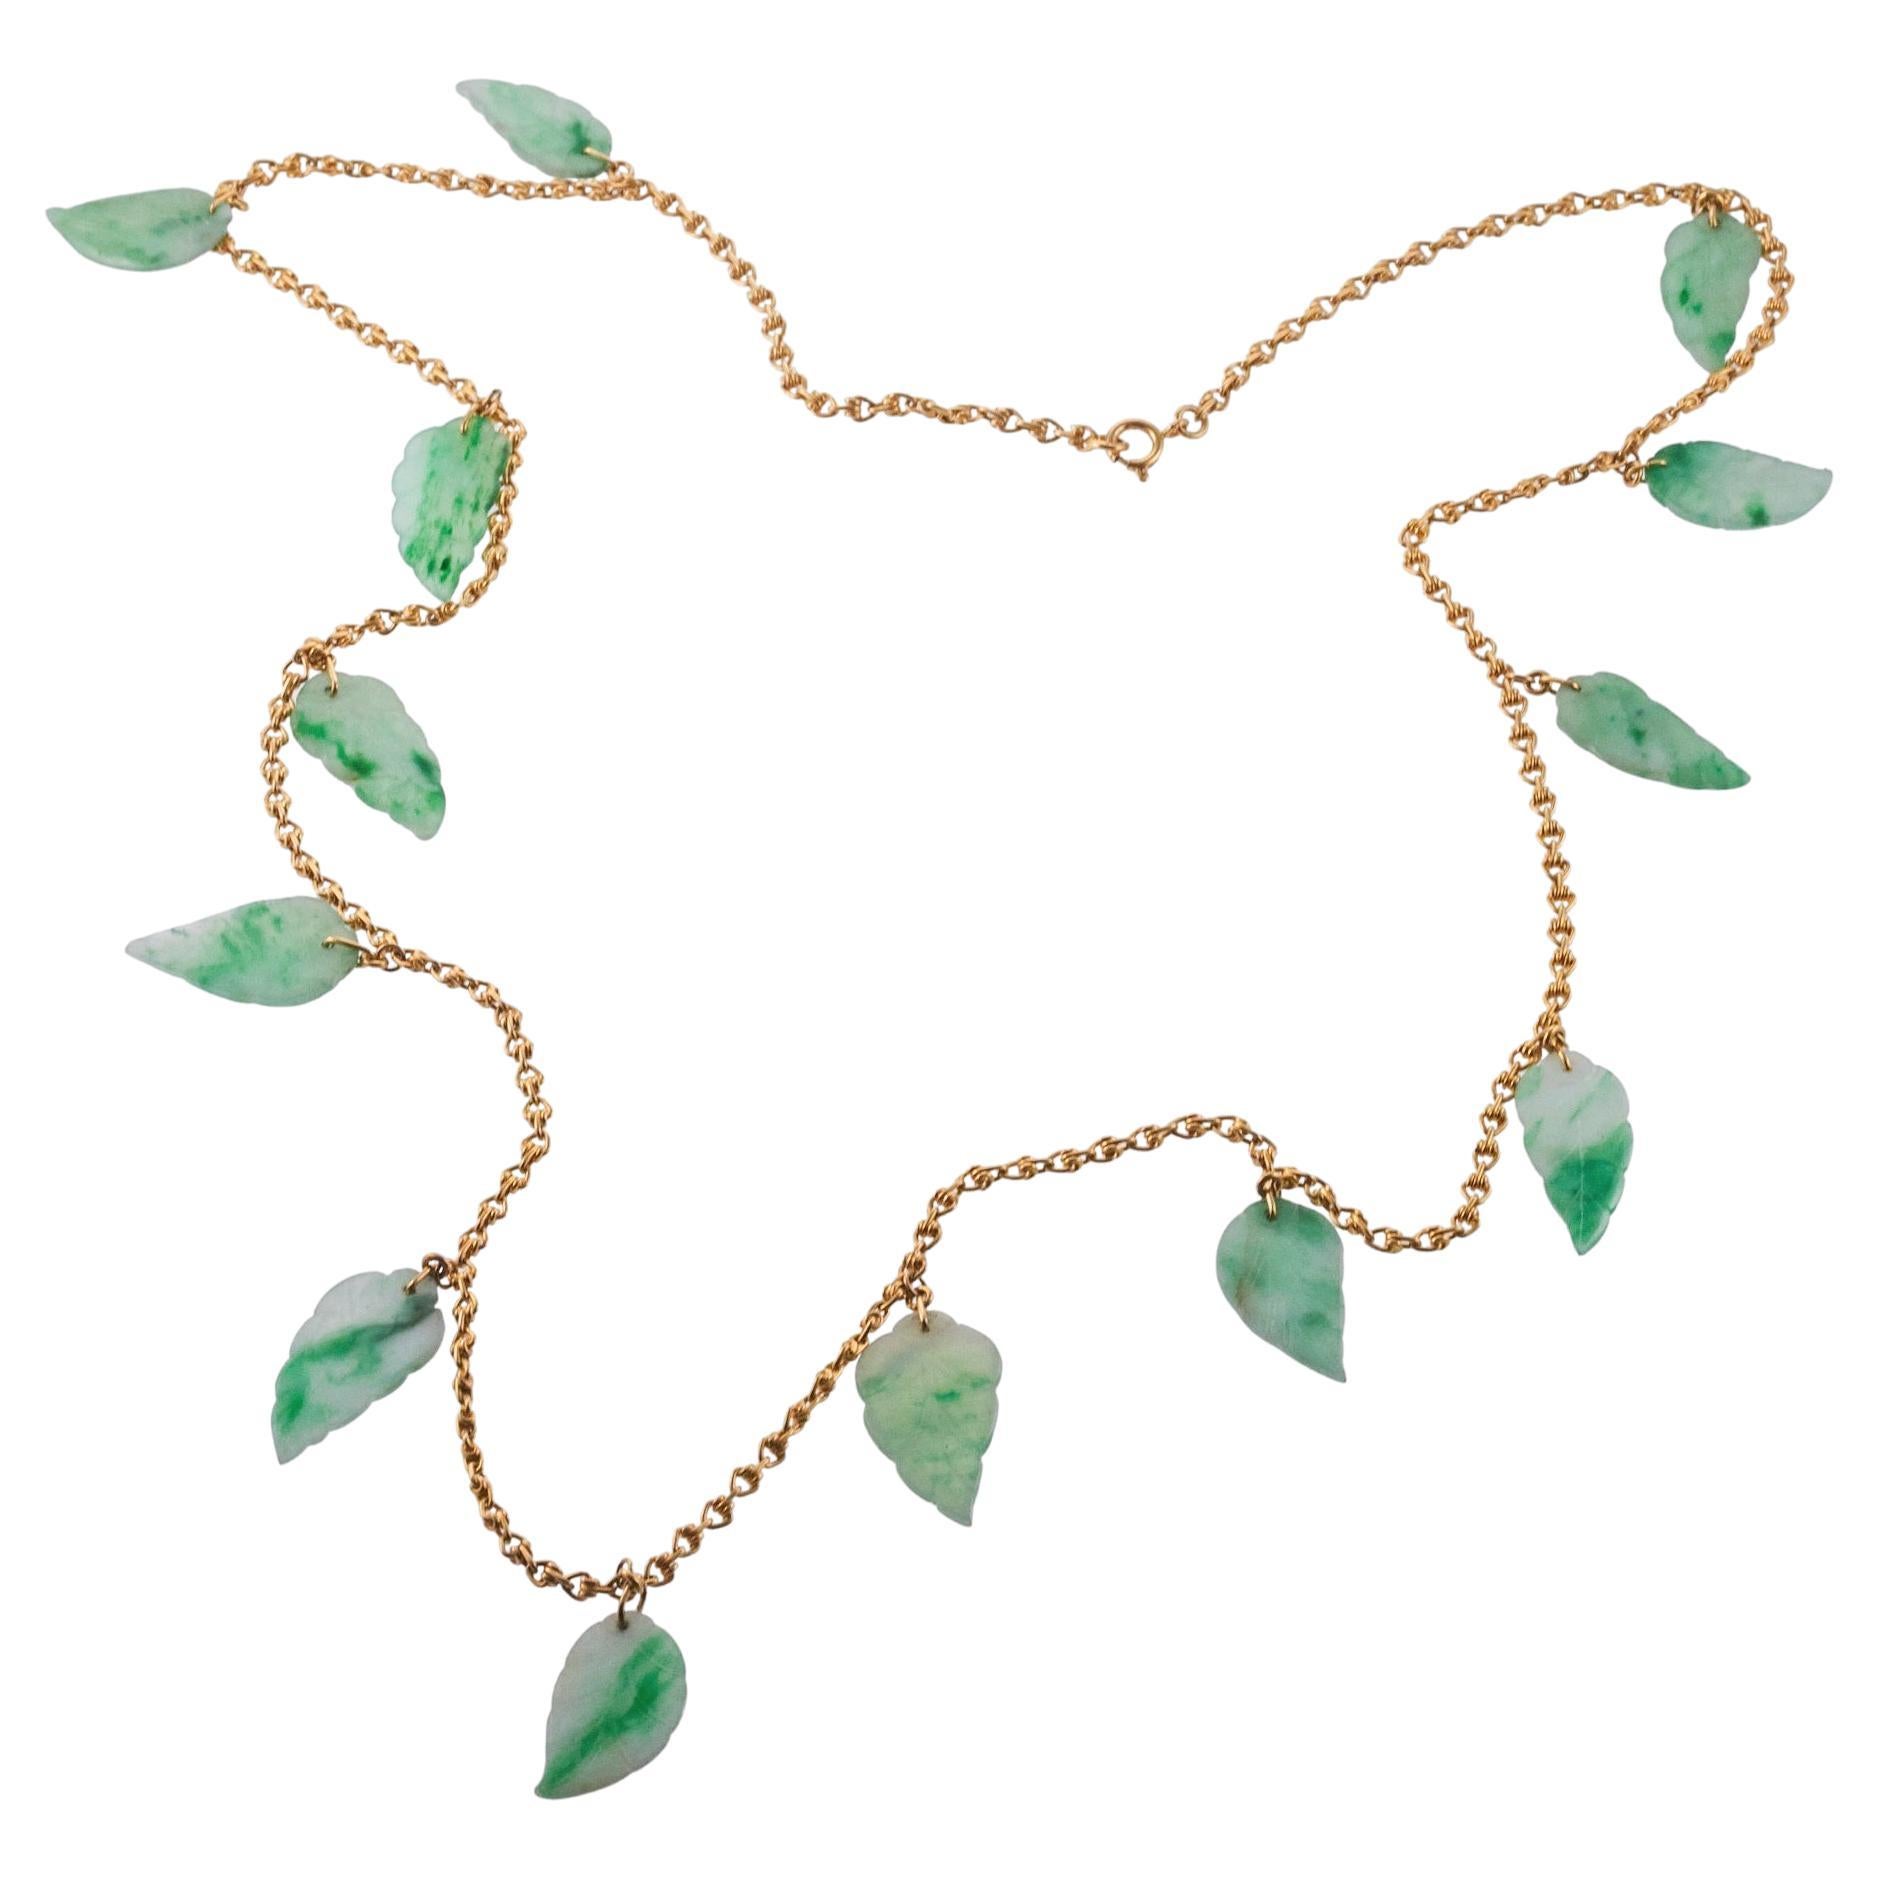 Lange 18k Goldkette Halskette, mit 13 geschnitzten Blättern Jade Anhänger, jeder Messung ca. 1 